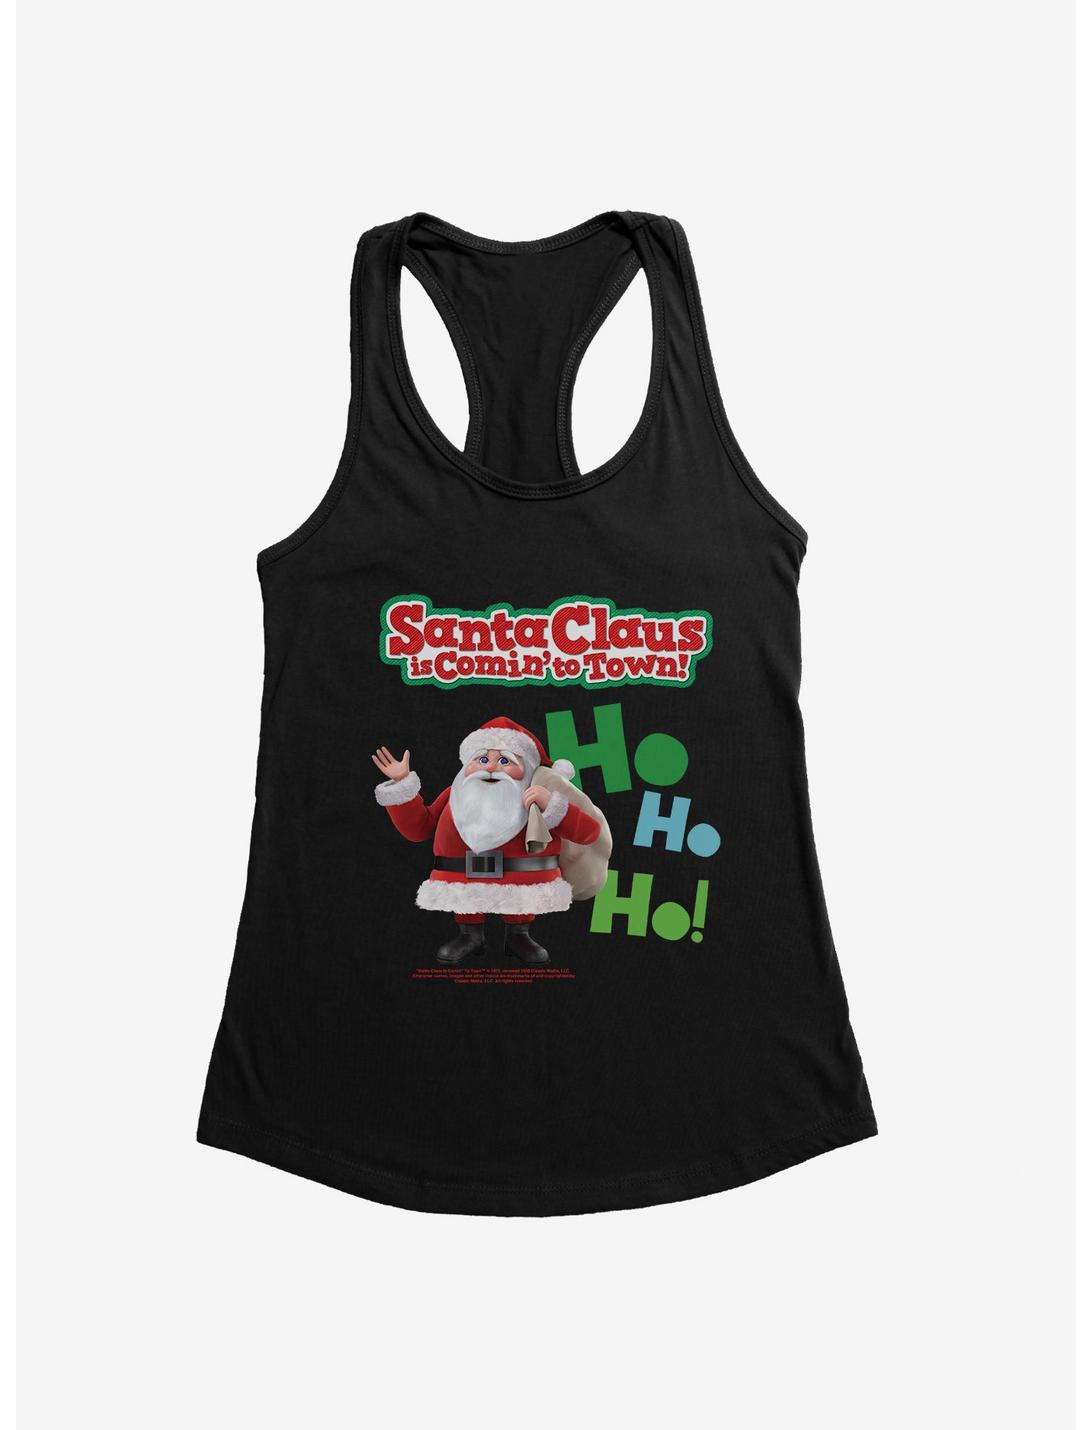 Santa Claus Is Comin' To Town! Ho Ho Ho! Santa Claus Womens Tank Top, , hi-res